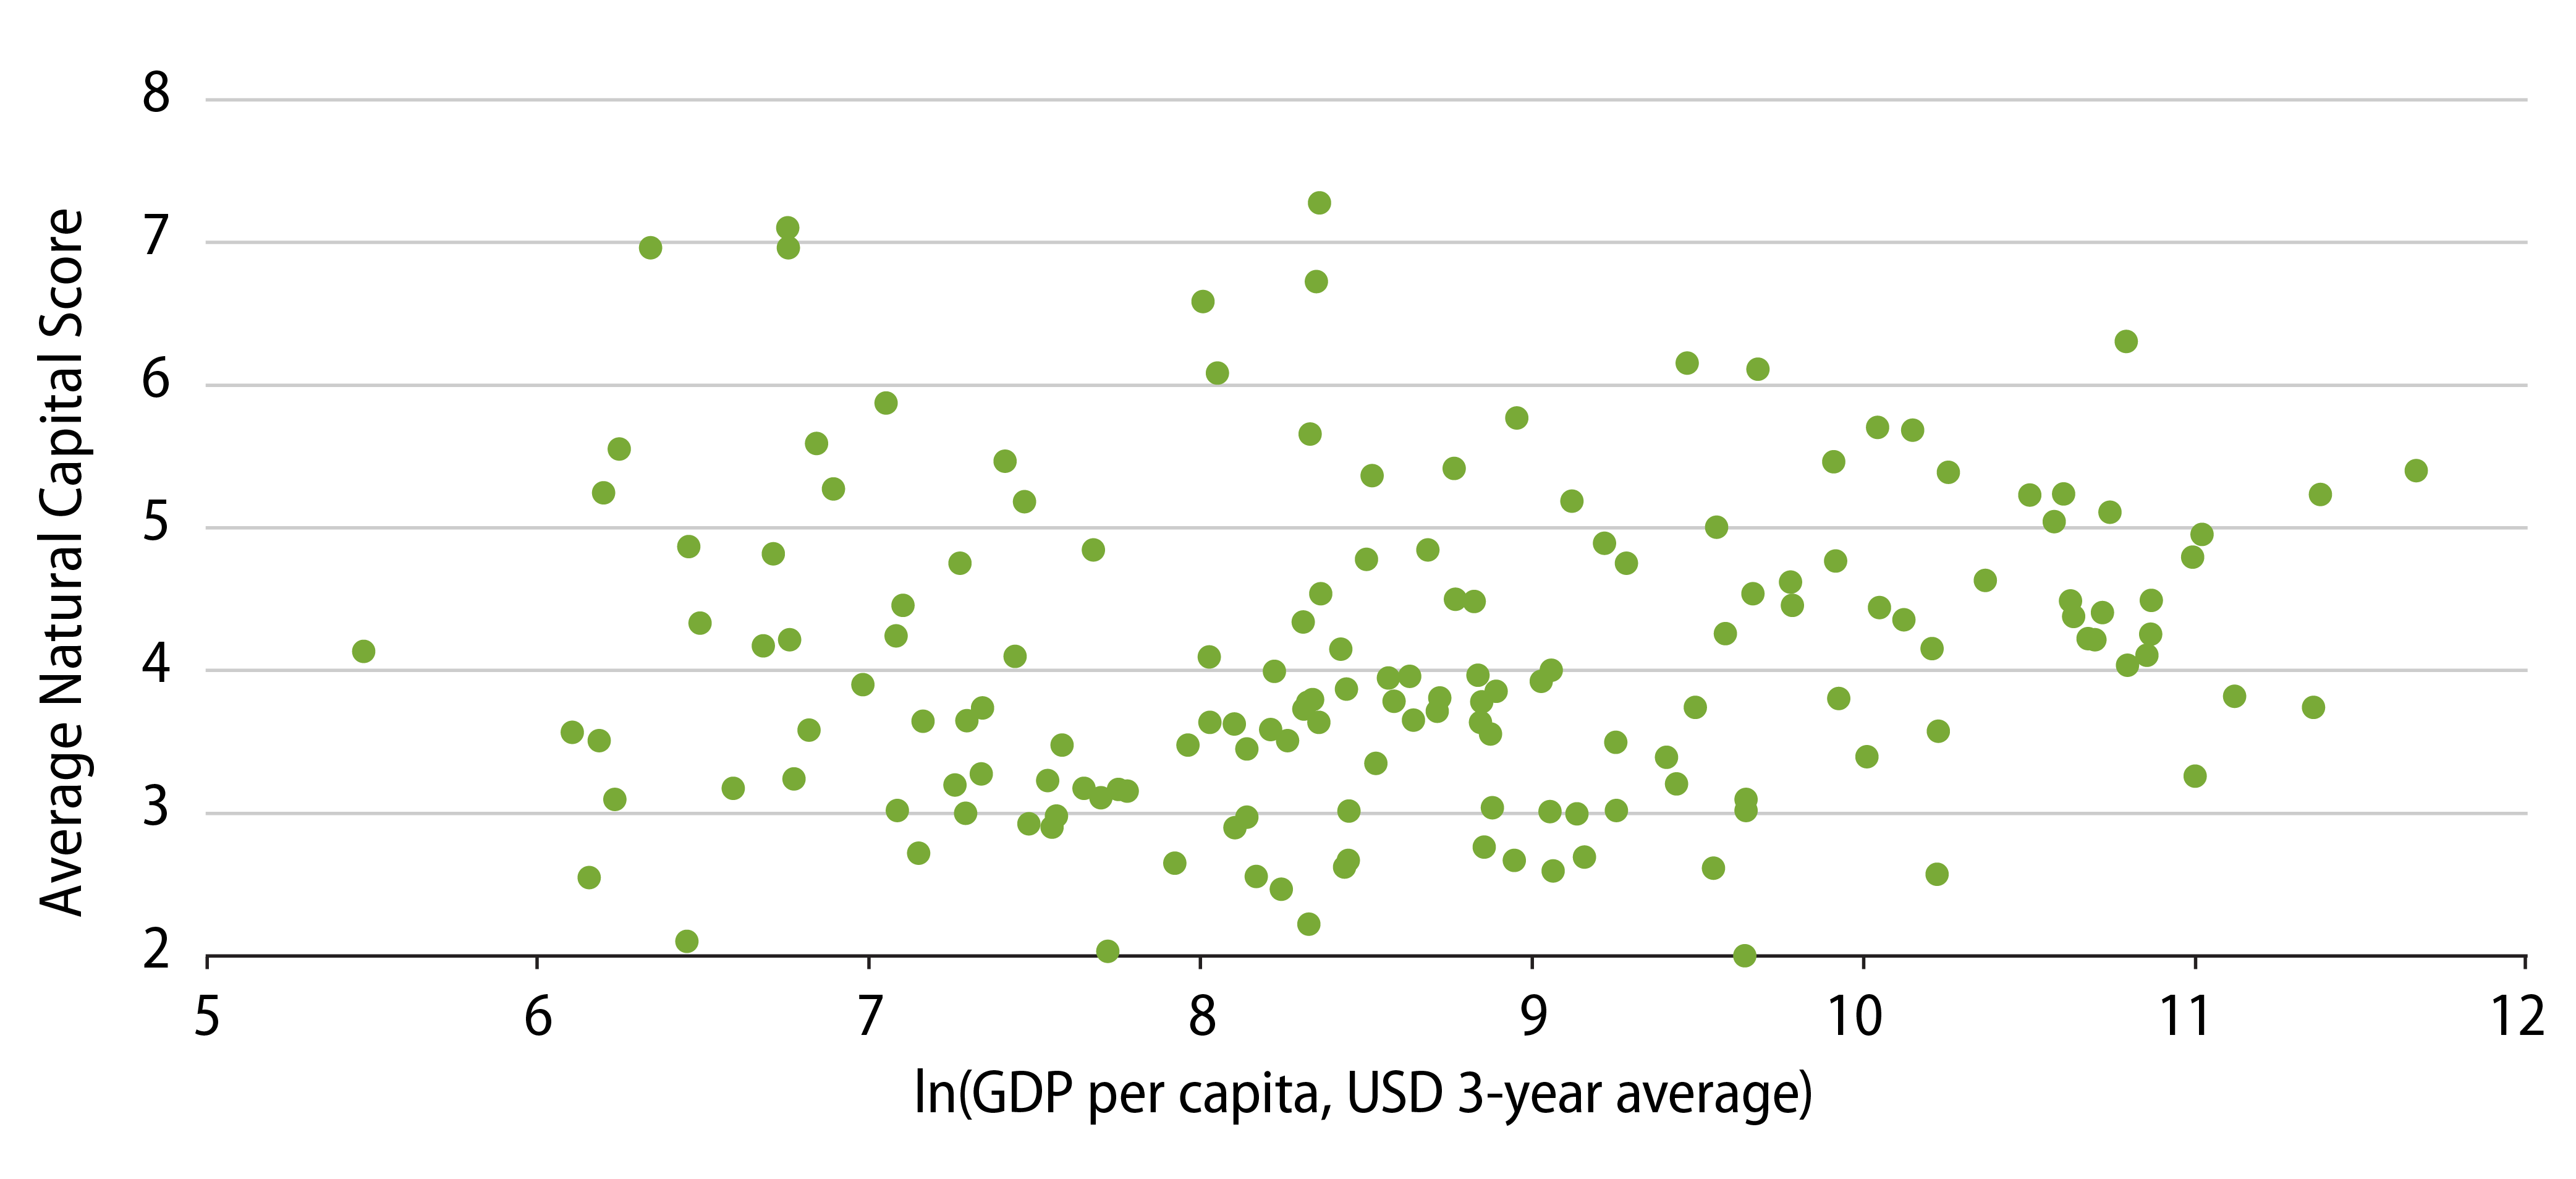 Comparing Sovereign Natural Capital vs GDP Per Capita